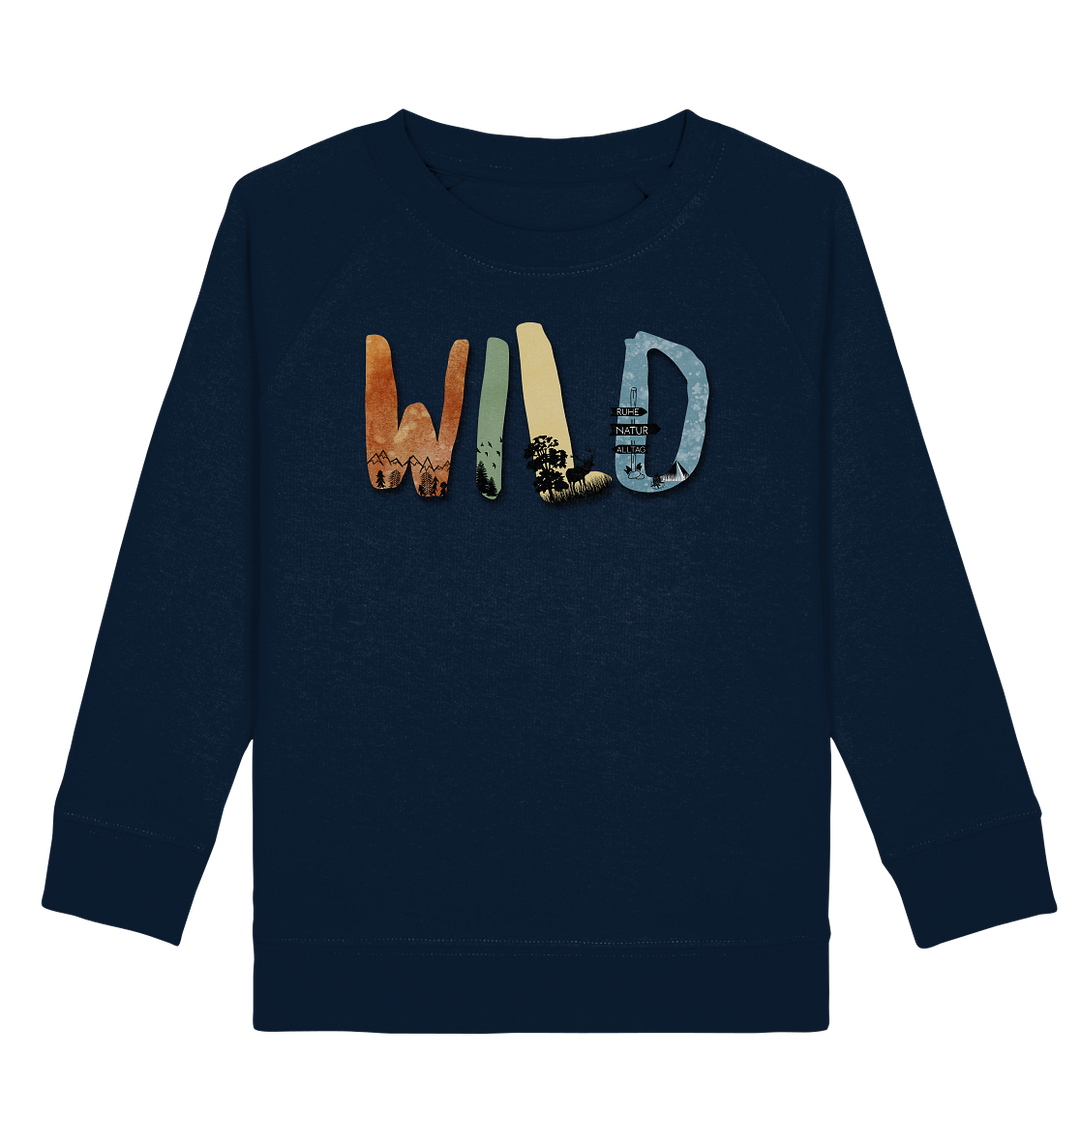 WILD - Kids Organic Sweatshirt